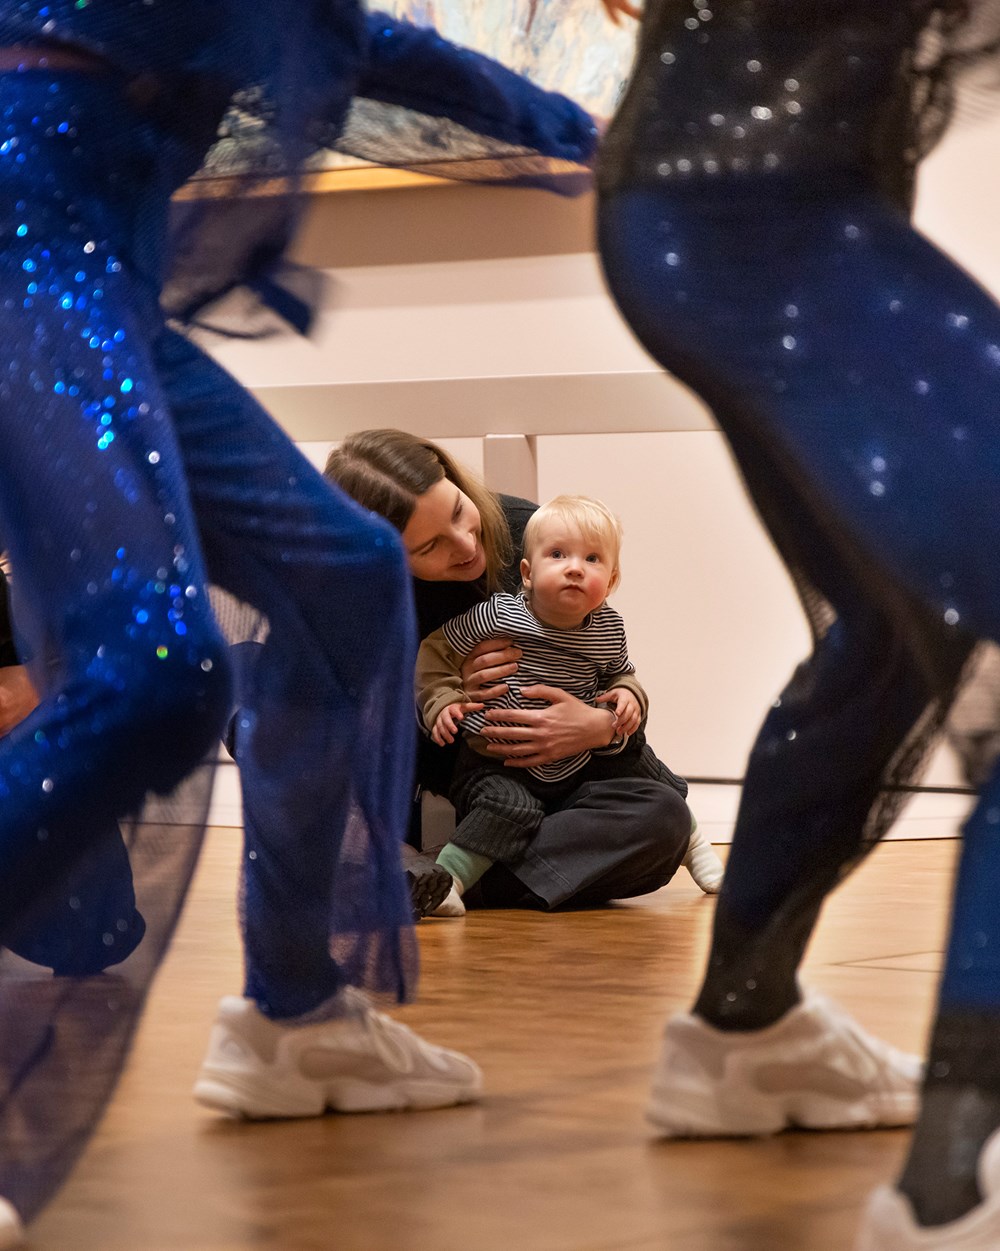 I forgrunnen deler av kroppene til to dansere i blåglitrende kostymer, i bakgrunnen og i fokus en baby på mors fang som ser oppmerksomt på danserne